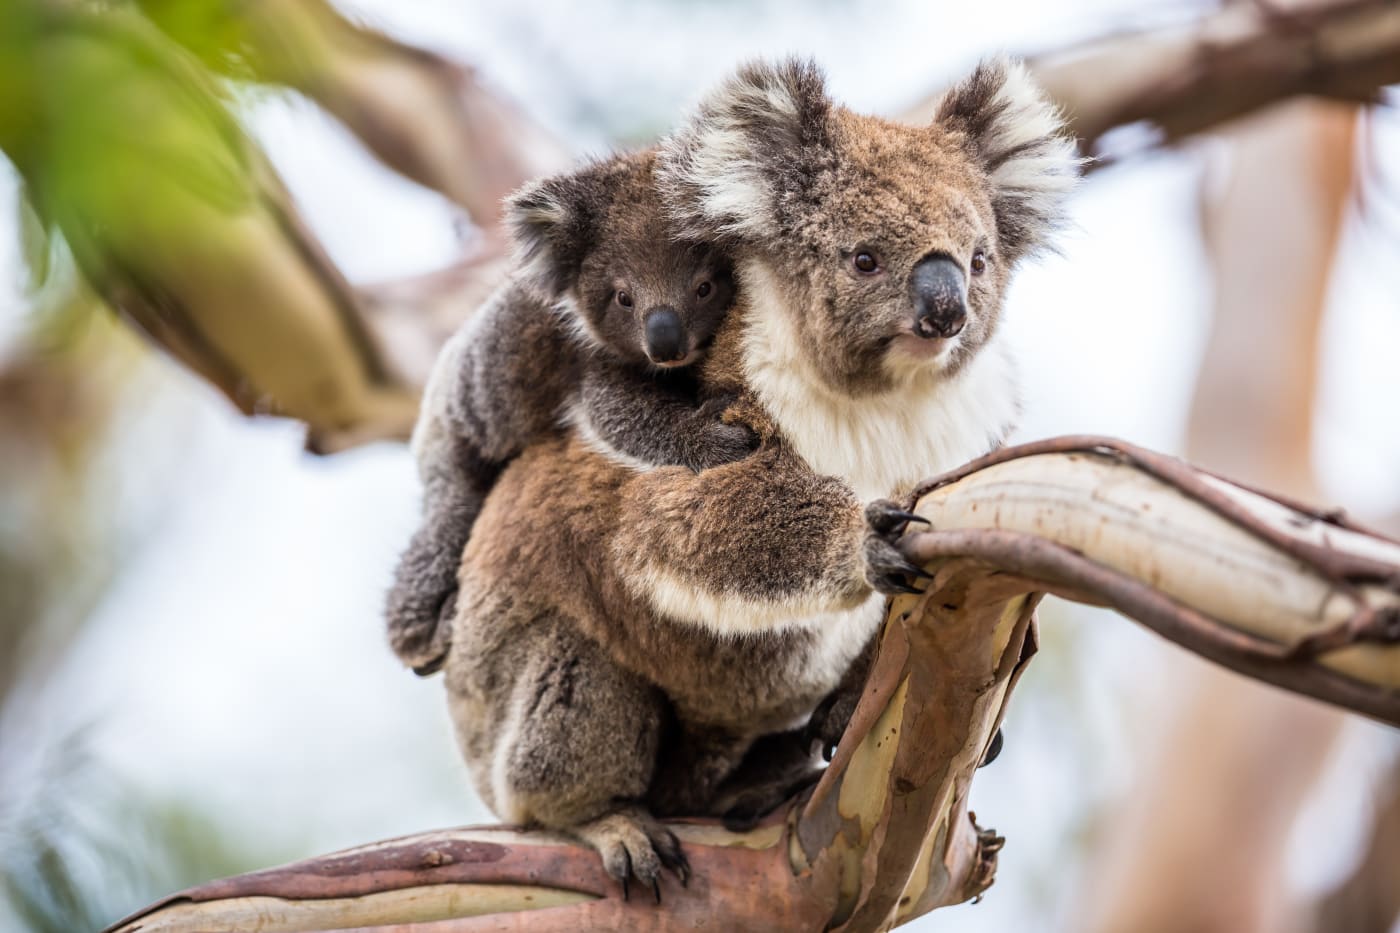 Koala mother and her koala joey in a tree